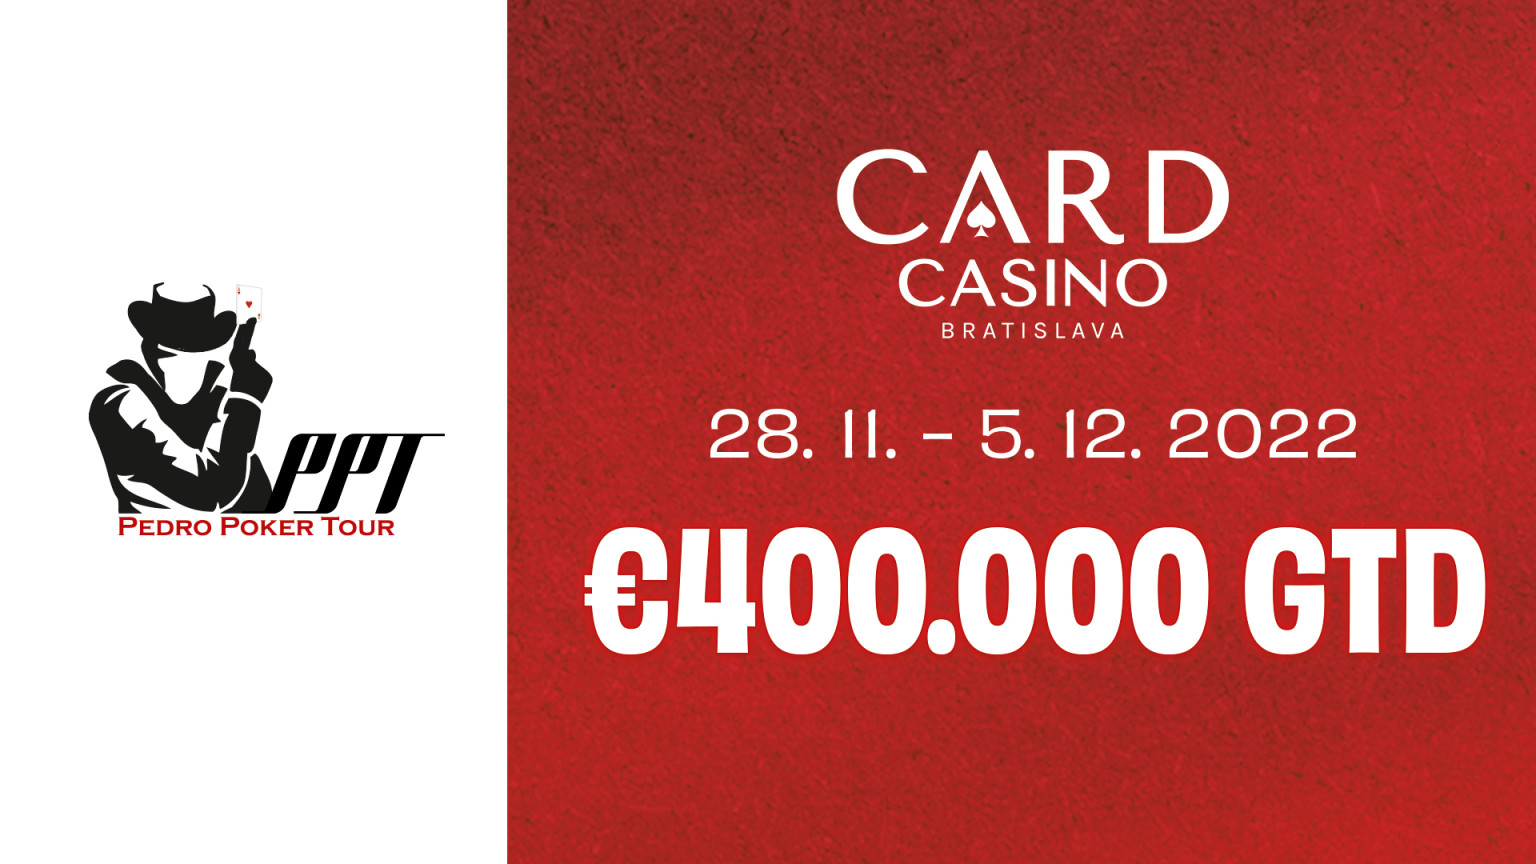 The Pedro Poker Tour €400,000 GTD!